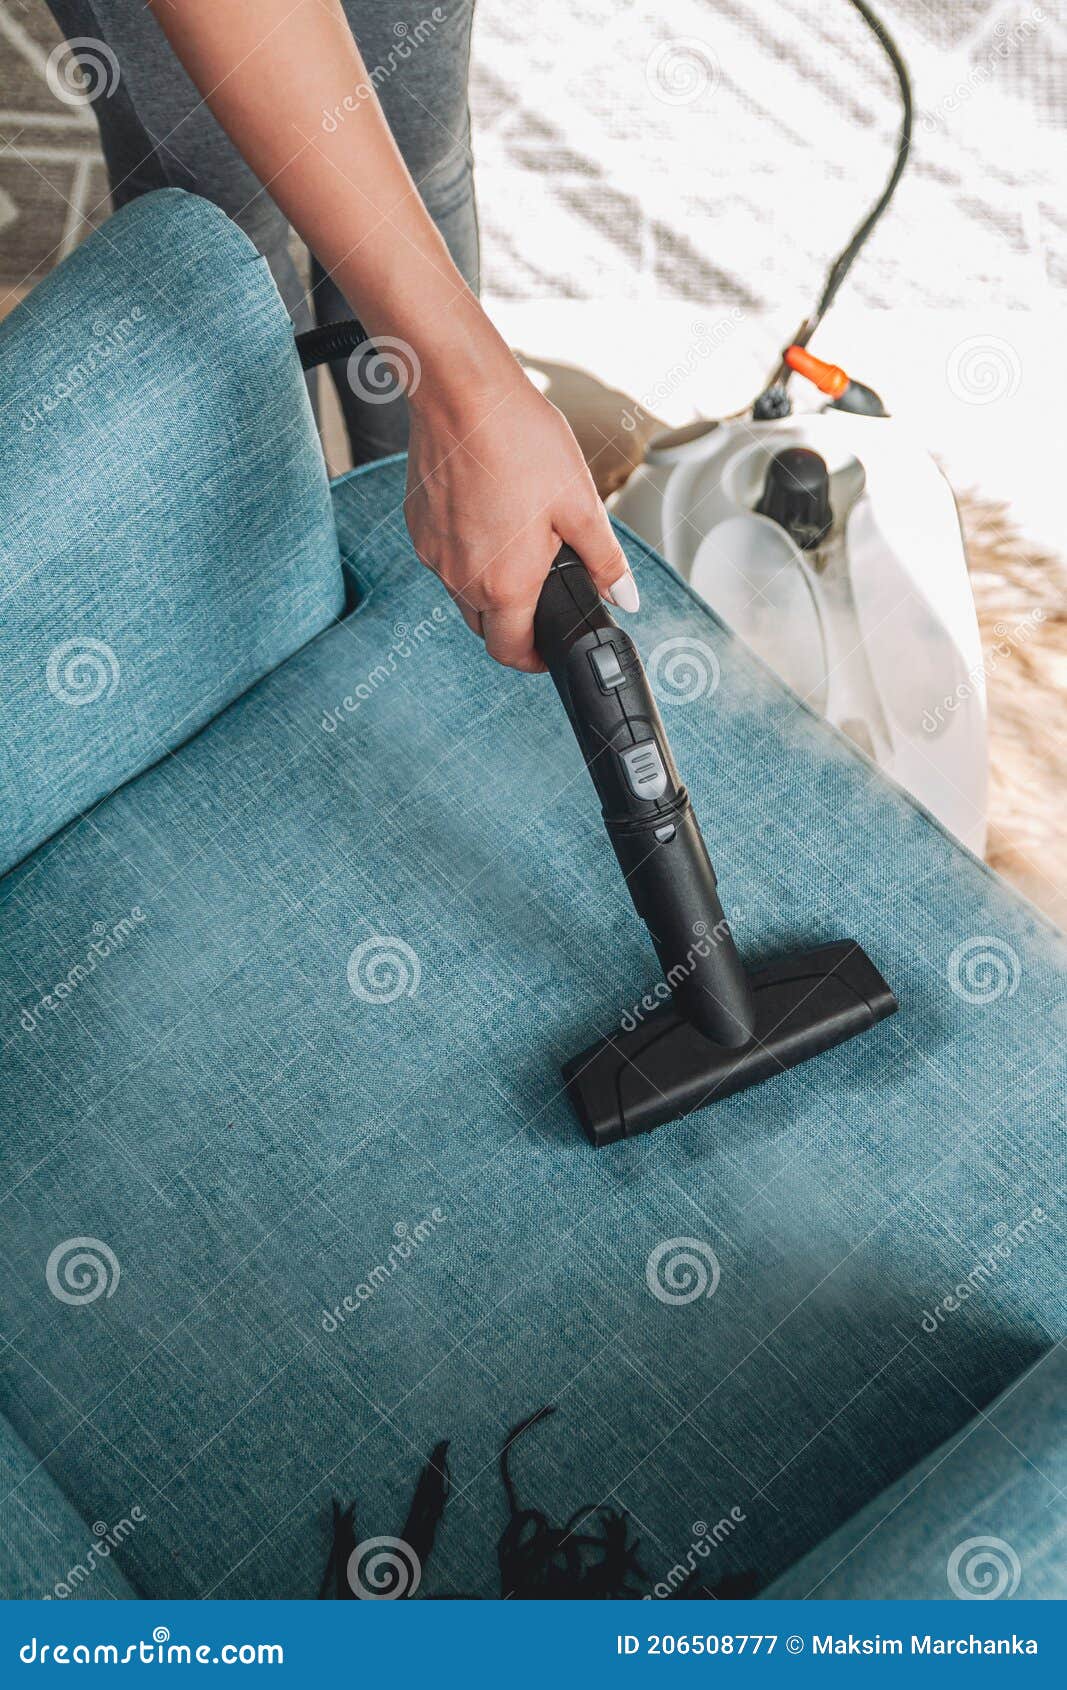 Limpieza Manual De Un Sillón Con Limpiador De Vapor Para Limpieza En Casa  Imagen de archivo - Imagen de sanitario, cepillo: 206508777